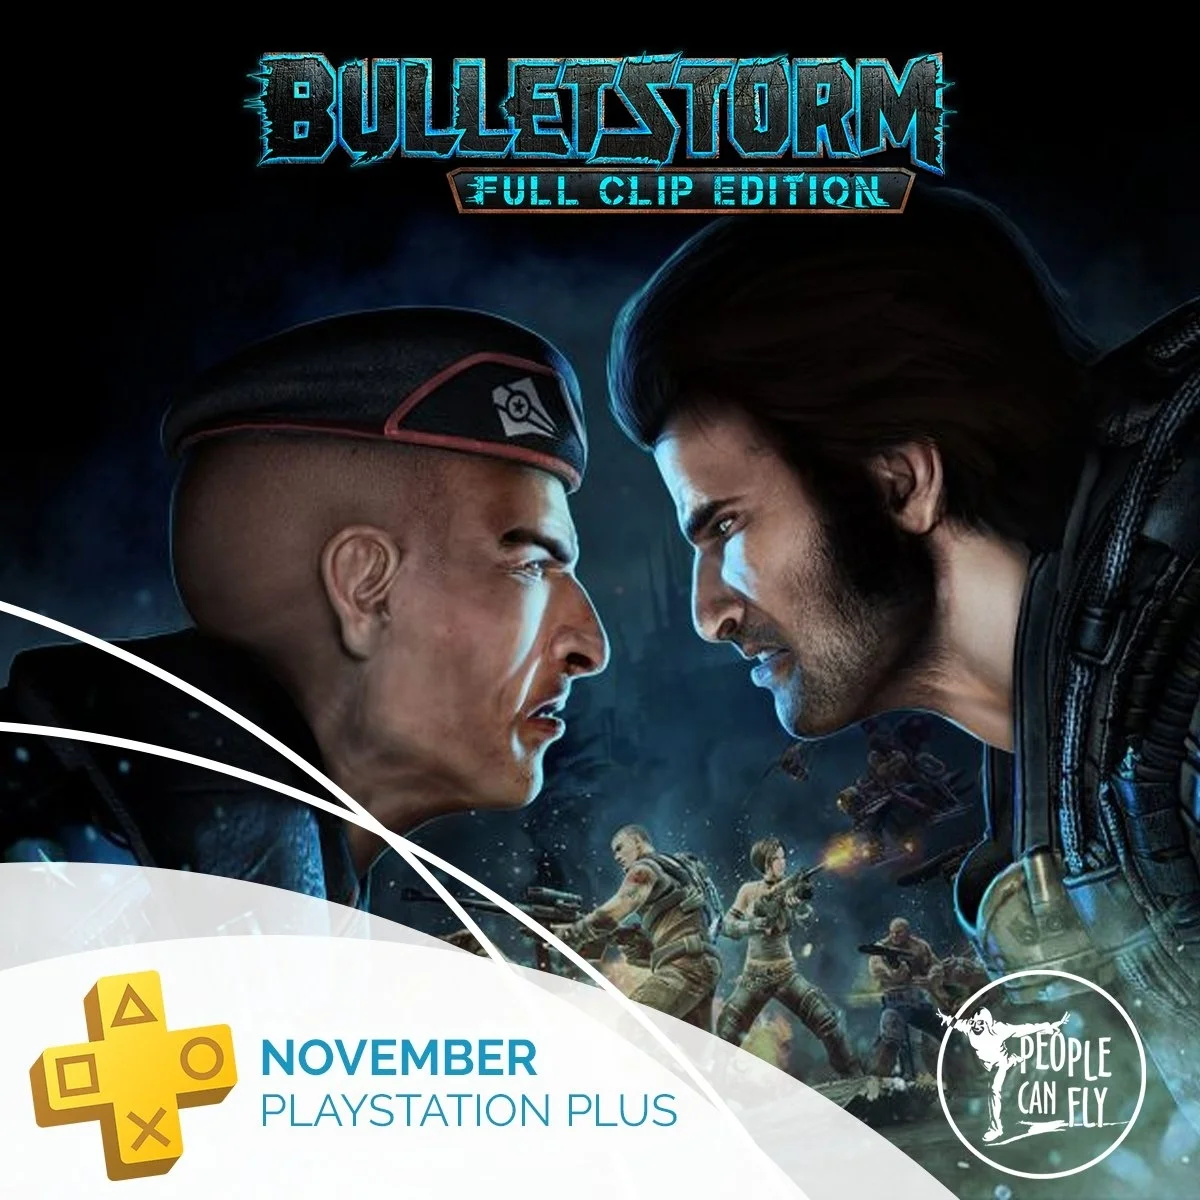 Создатели Bulletstorm подтвердили утёкший ноябрьский набор PS Plus - фото 1